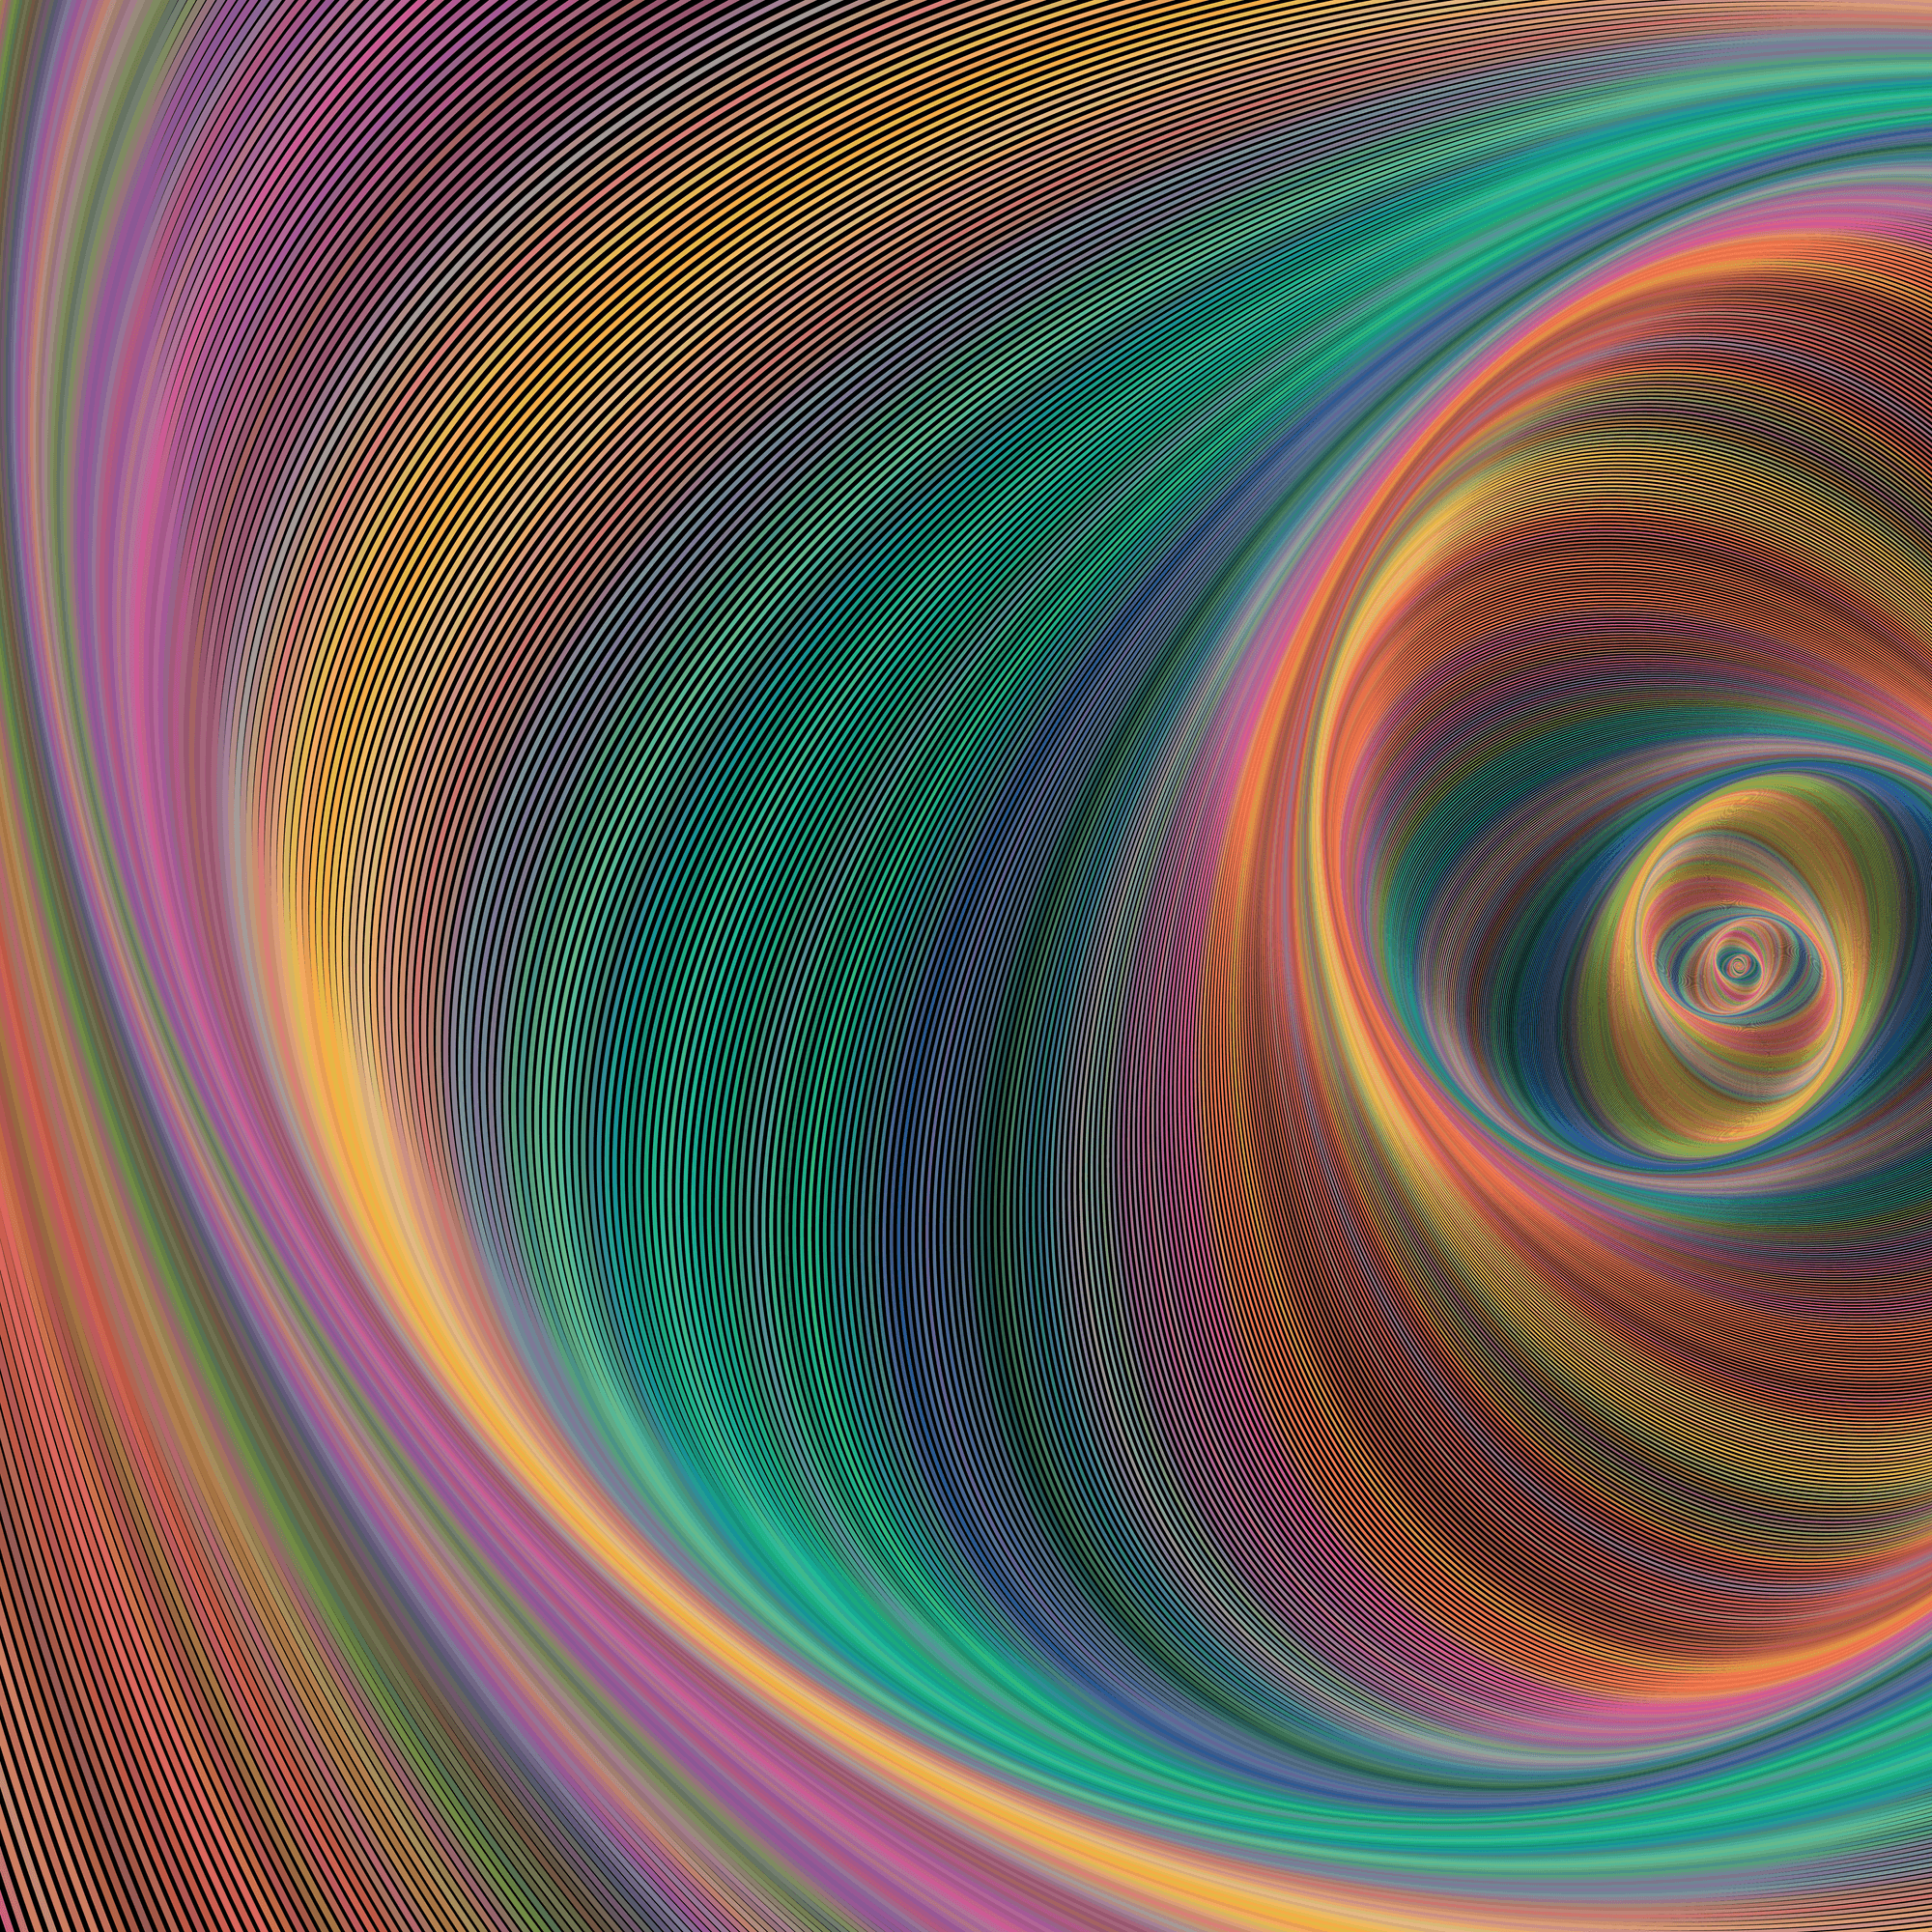 Ebony Jerk Off Instruction - Curved Colorful Magic #65 - Curved Colorful Magic by David Zydd | OpenSea